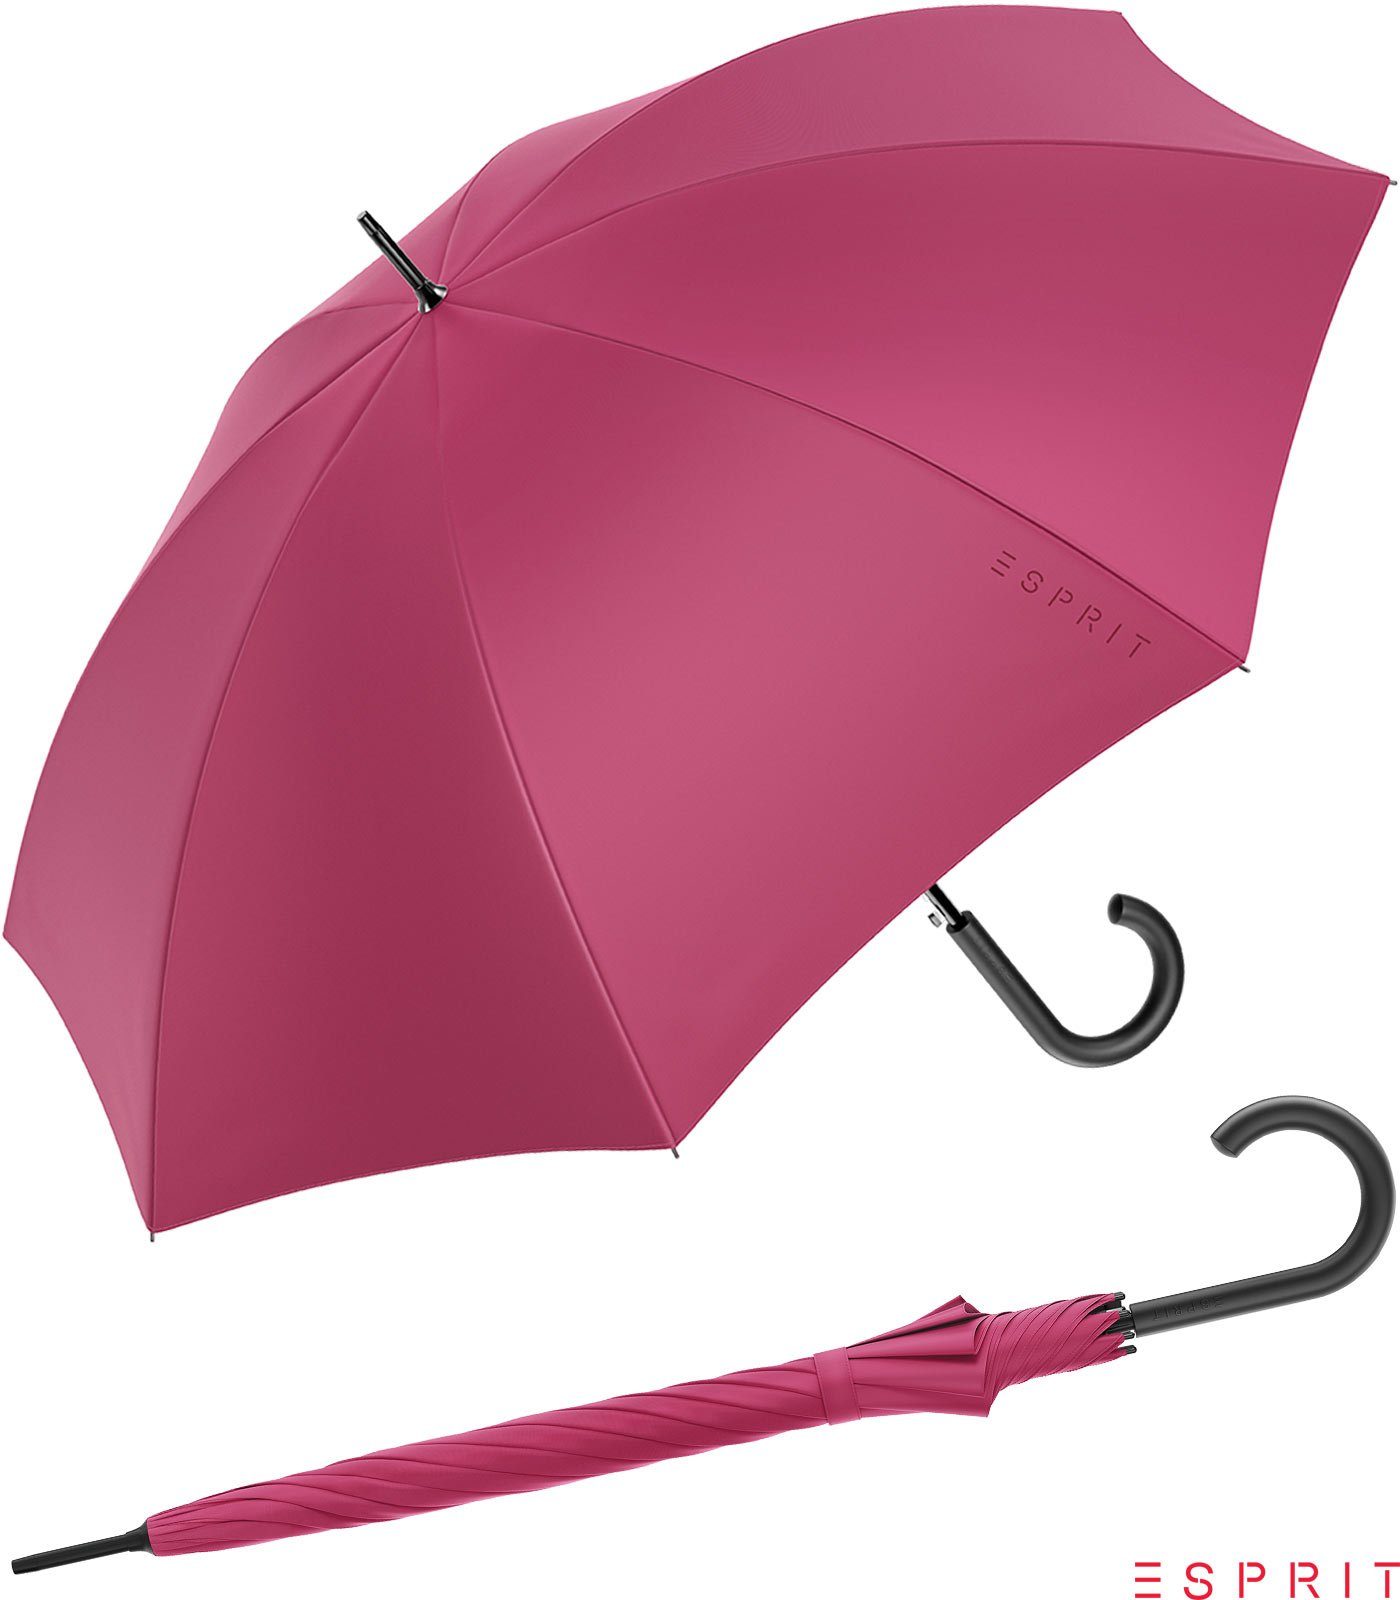 Esprit Langregenschirm Damen mit Auf-Automatik HW 2022 - vivacious pink, groß, stabil, in den Trendfarben